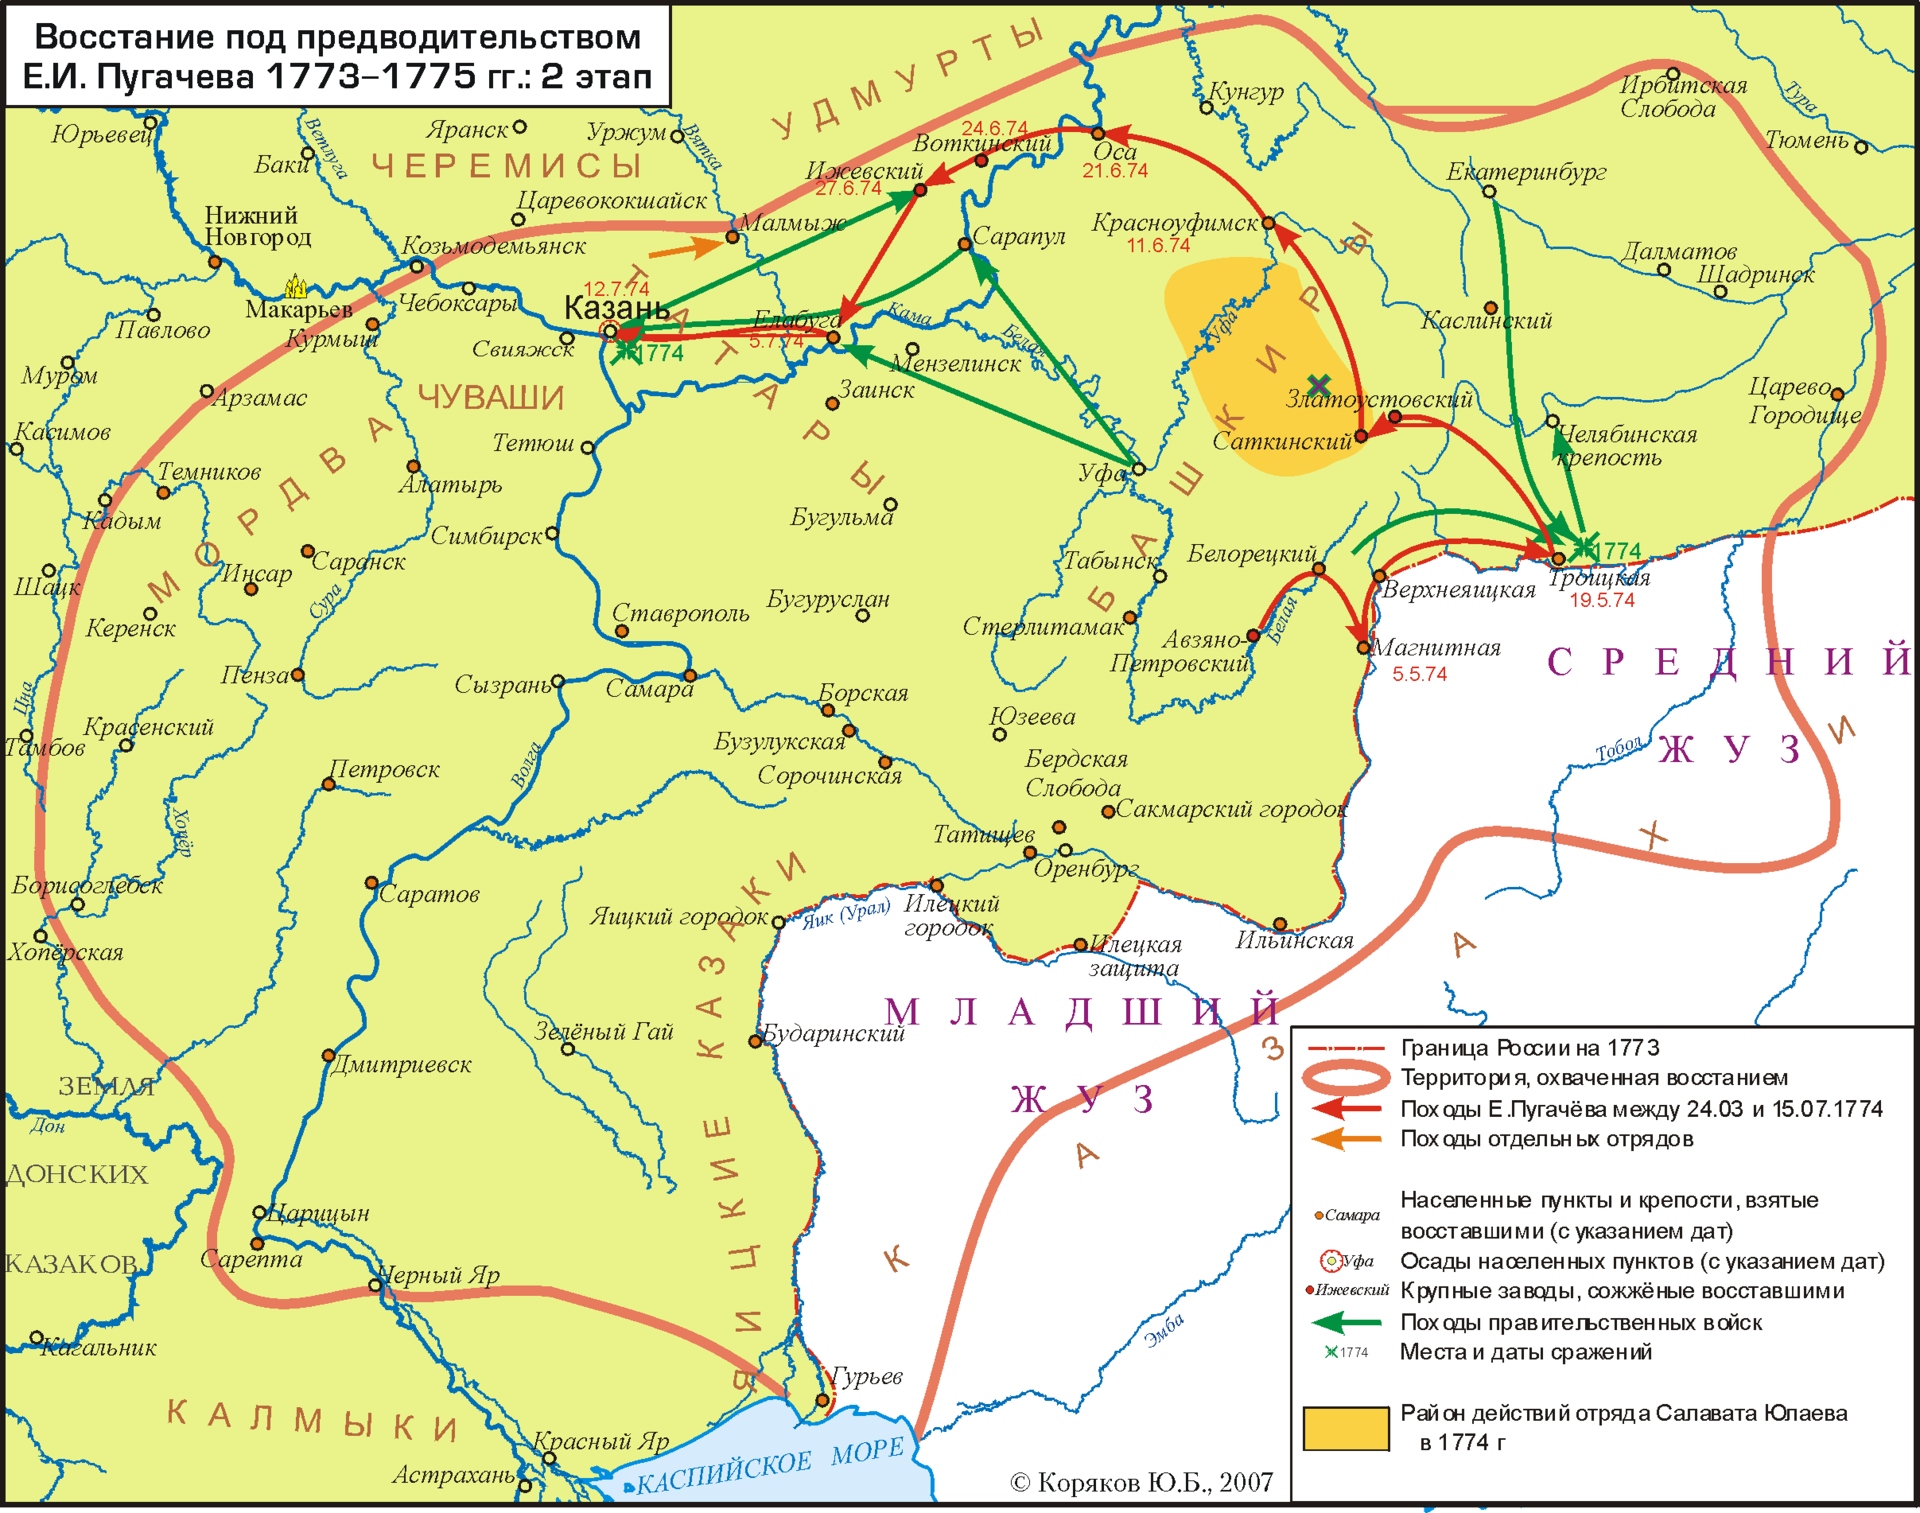 Второй этап Крестьянской войны 1773—1775 гг.